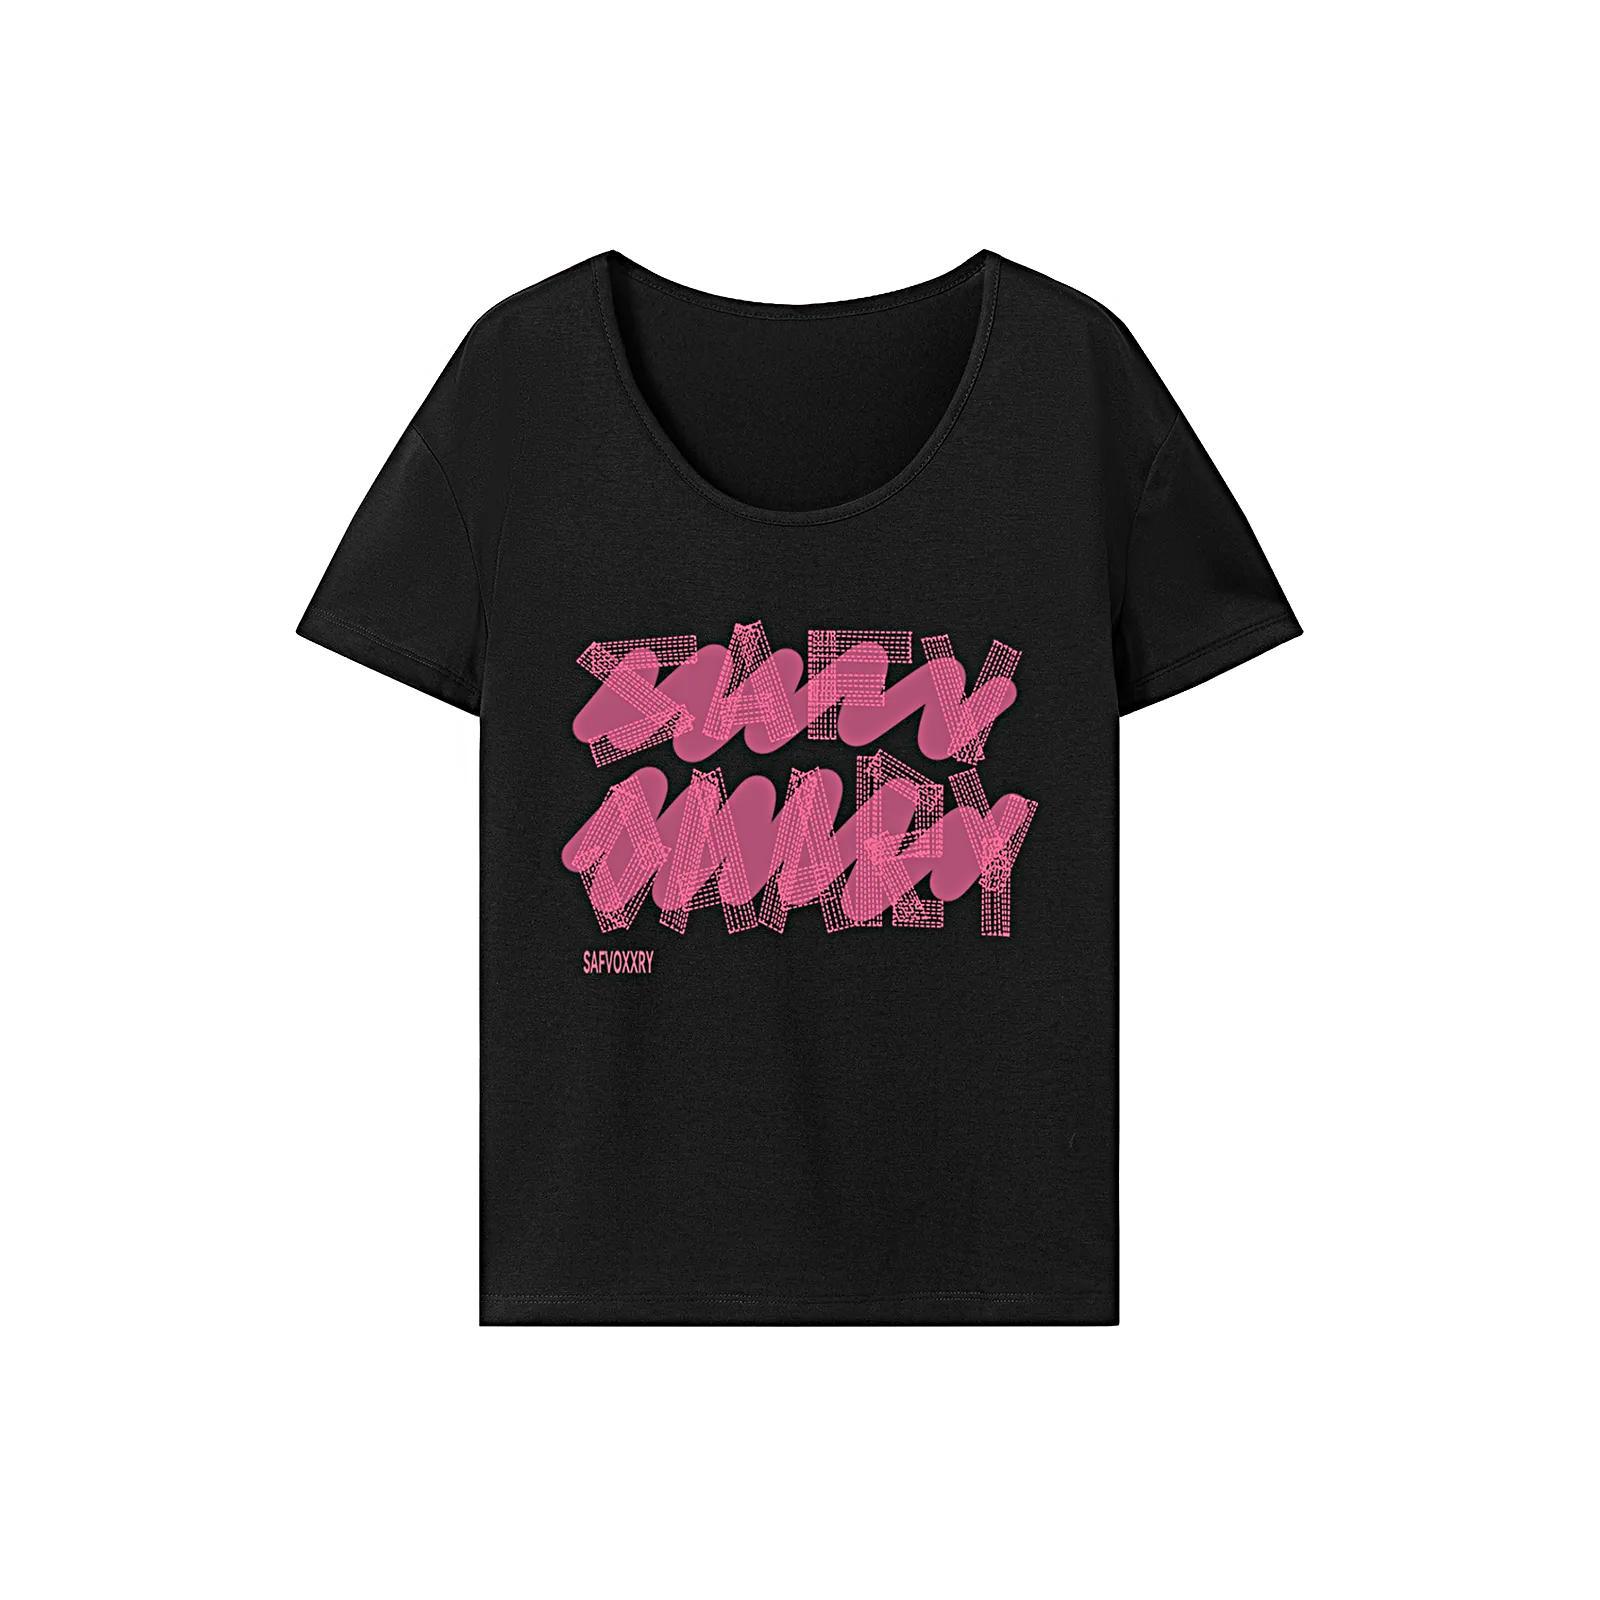 T Shirt for Women Summer Lightweight Crew Neck Tee for Walking Shopping Work S